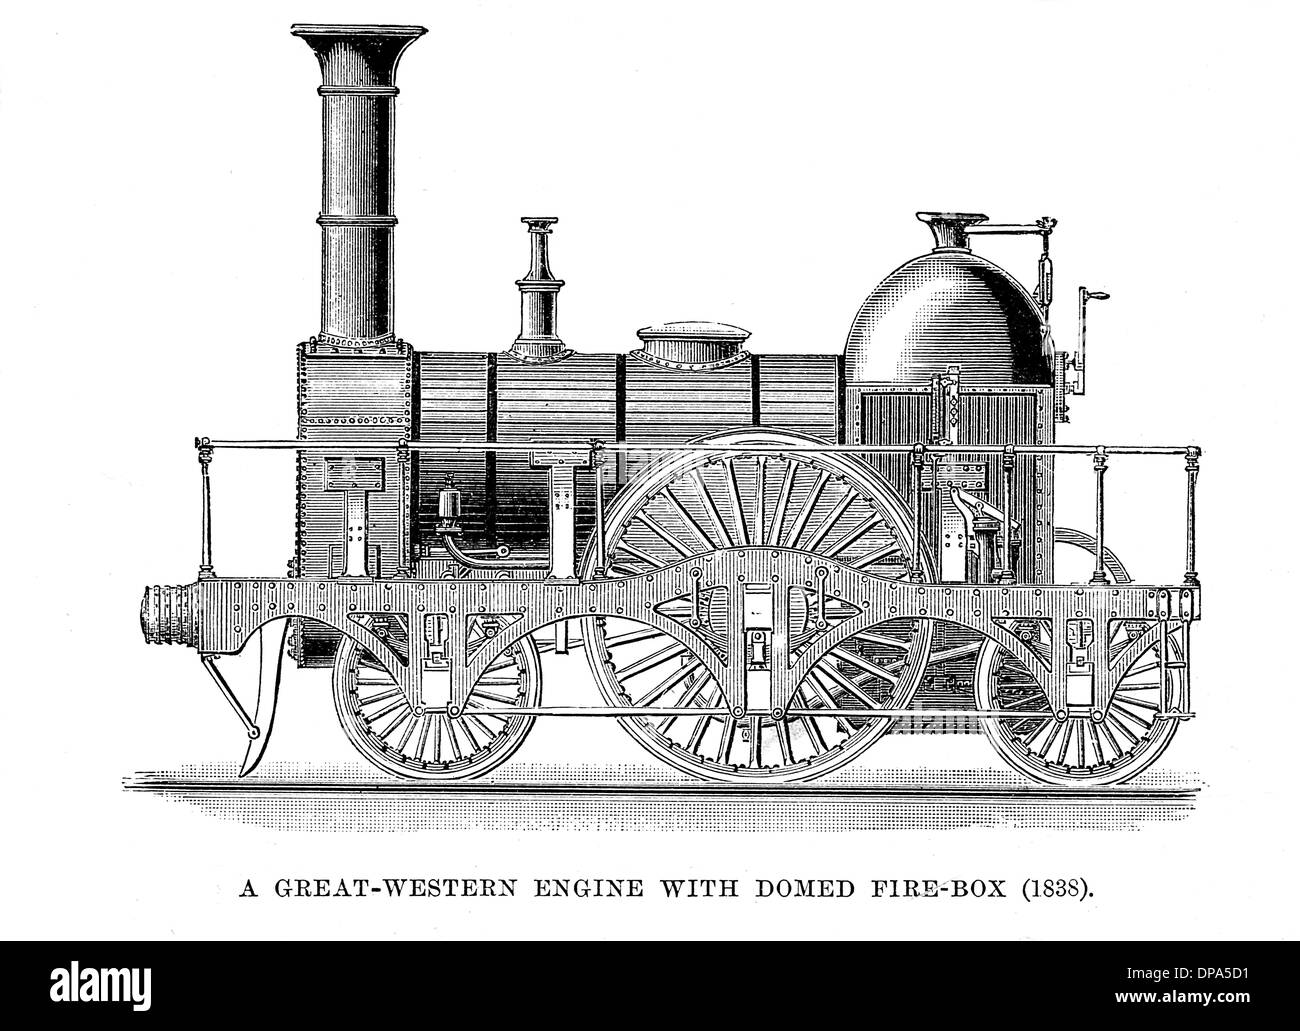 Grande locomotive de chemin de fer de l'Ouest 1838 Banque D'Images